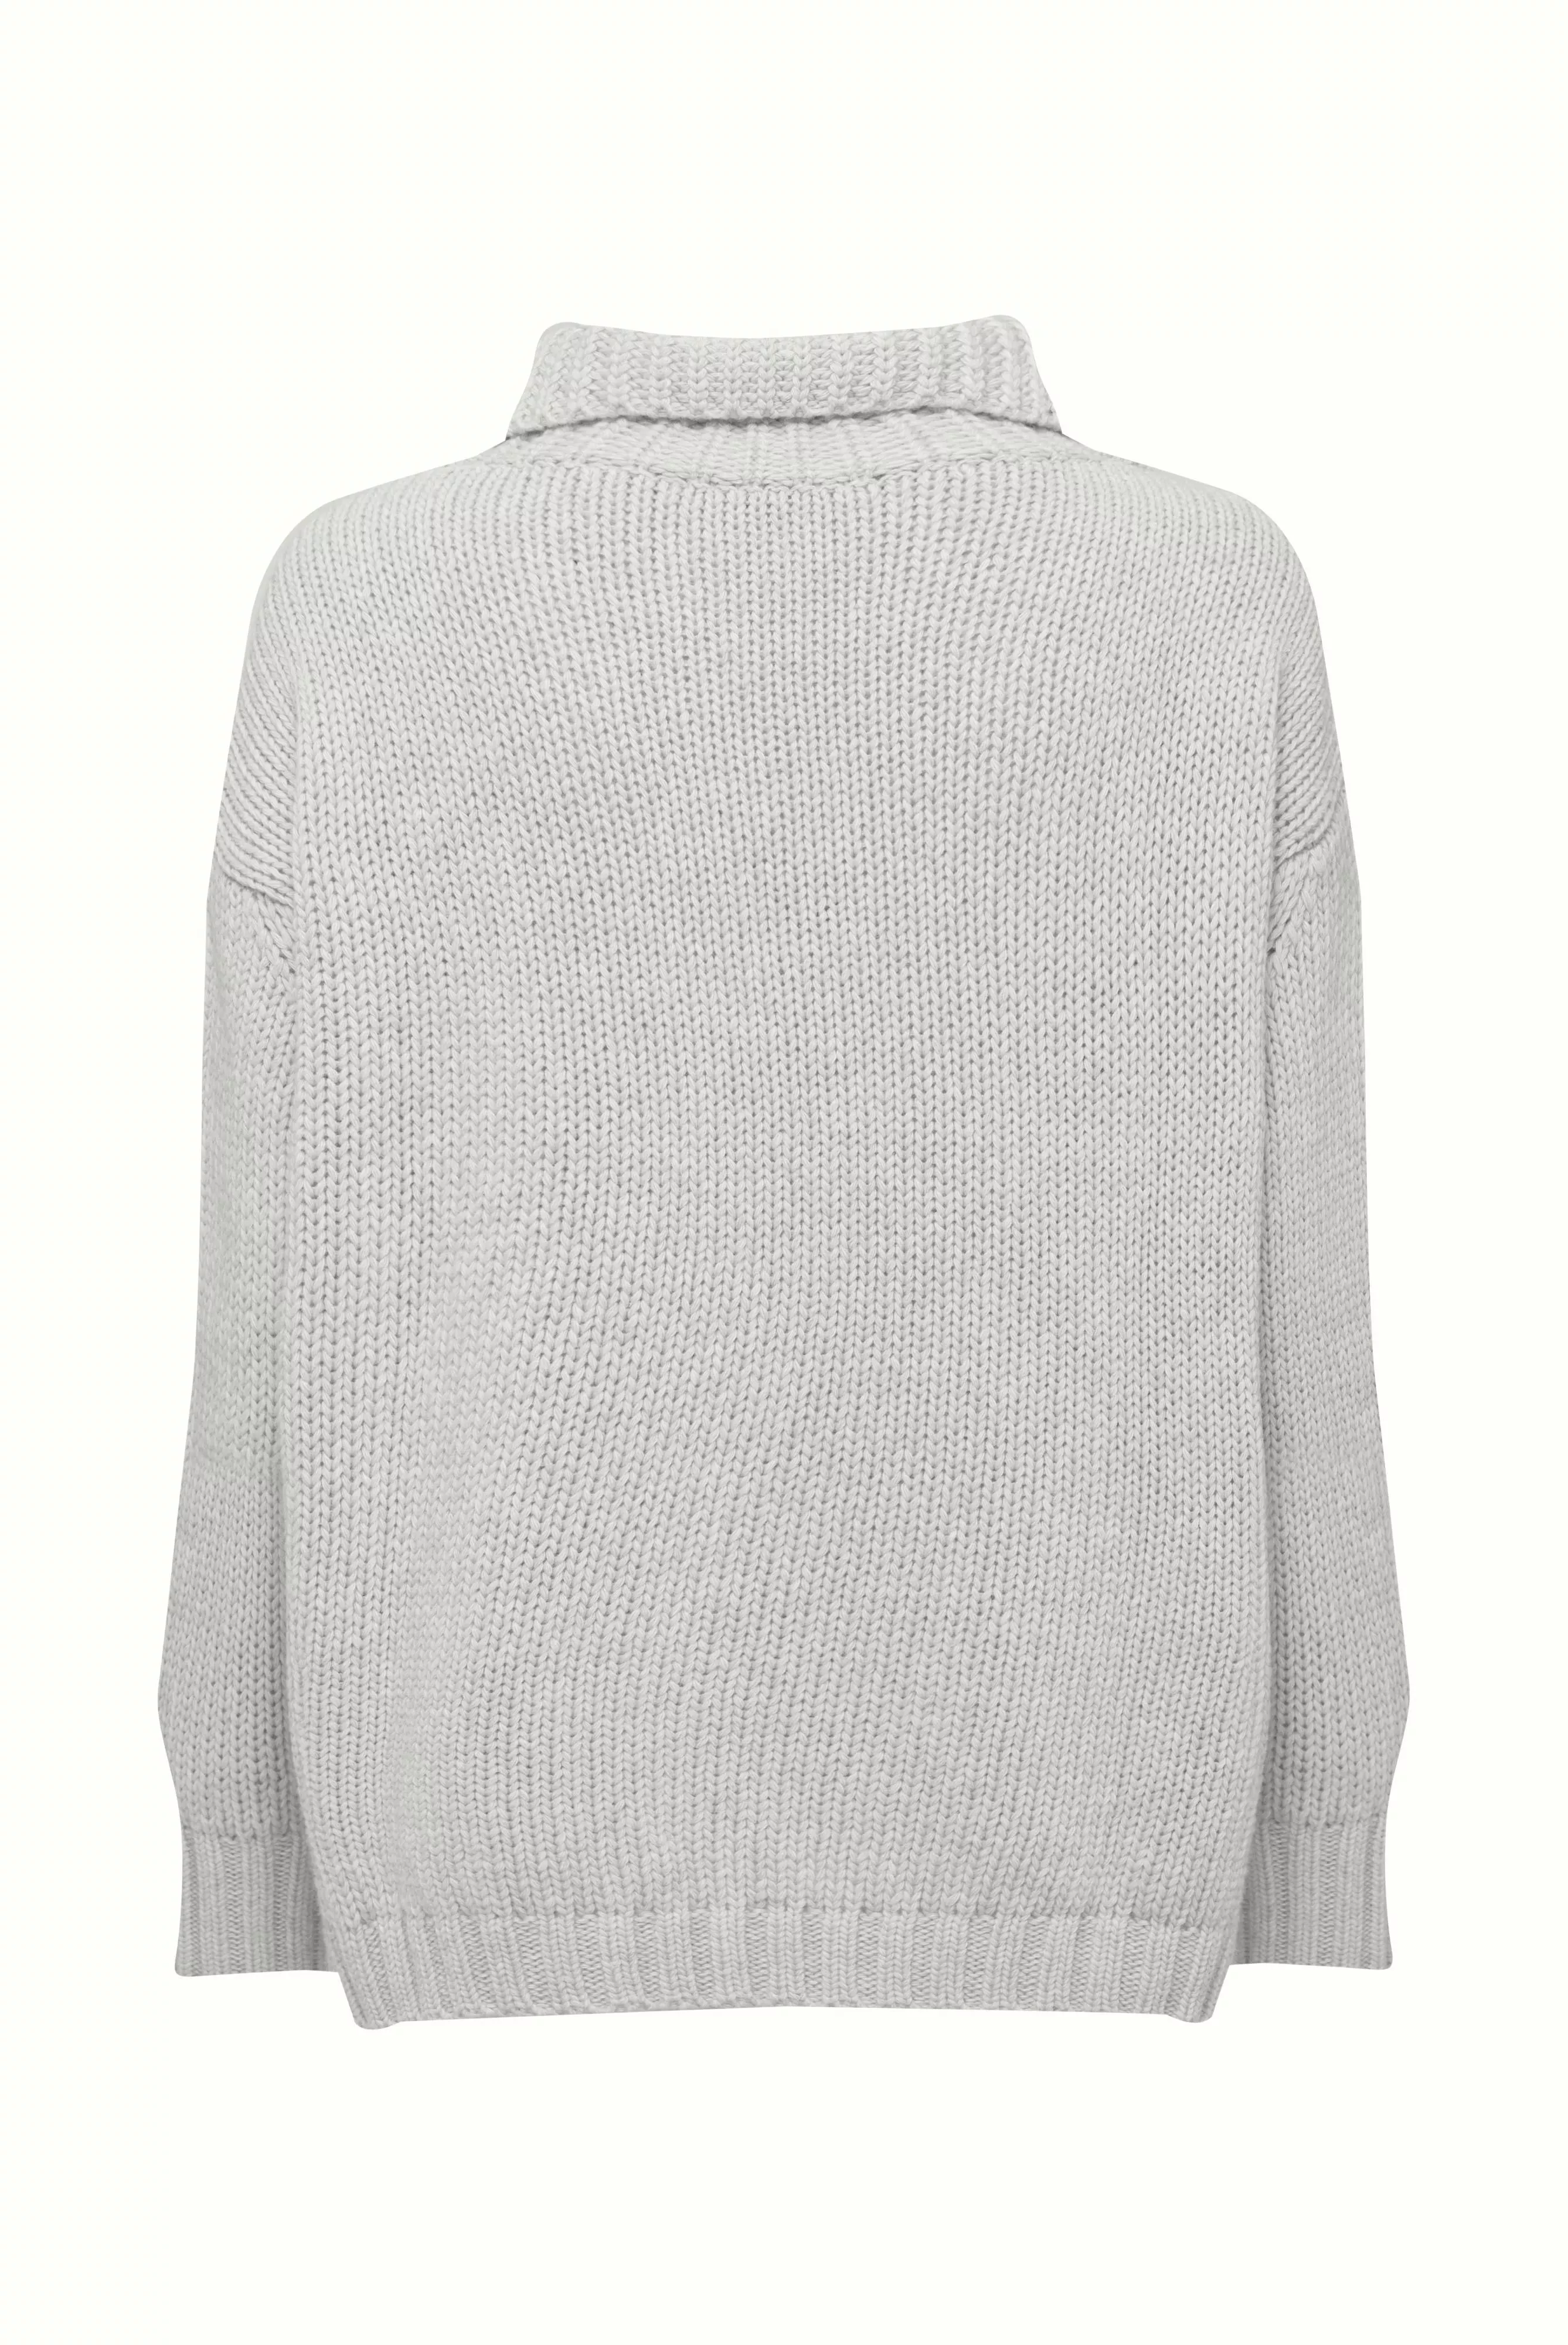 пуловер SELENA бежевый SELENA_S00221_110 ,photo 2